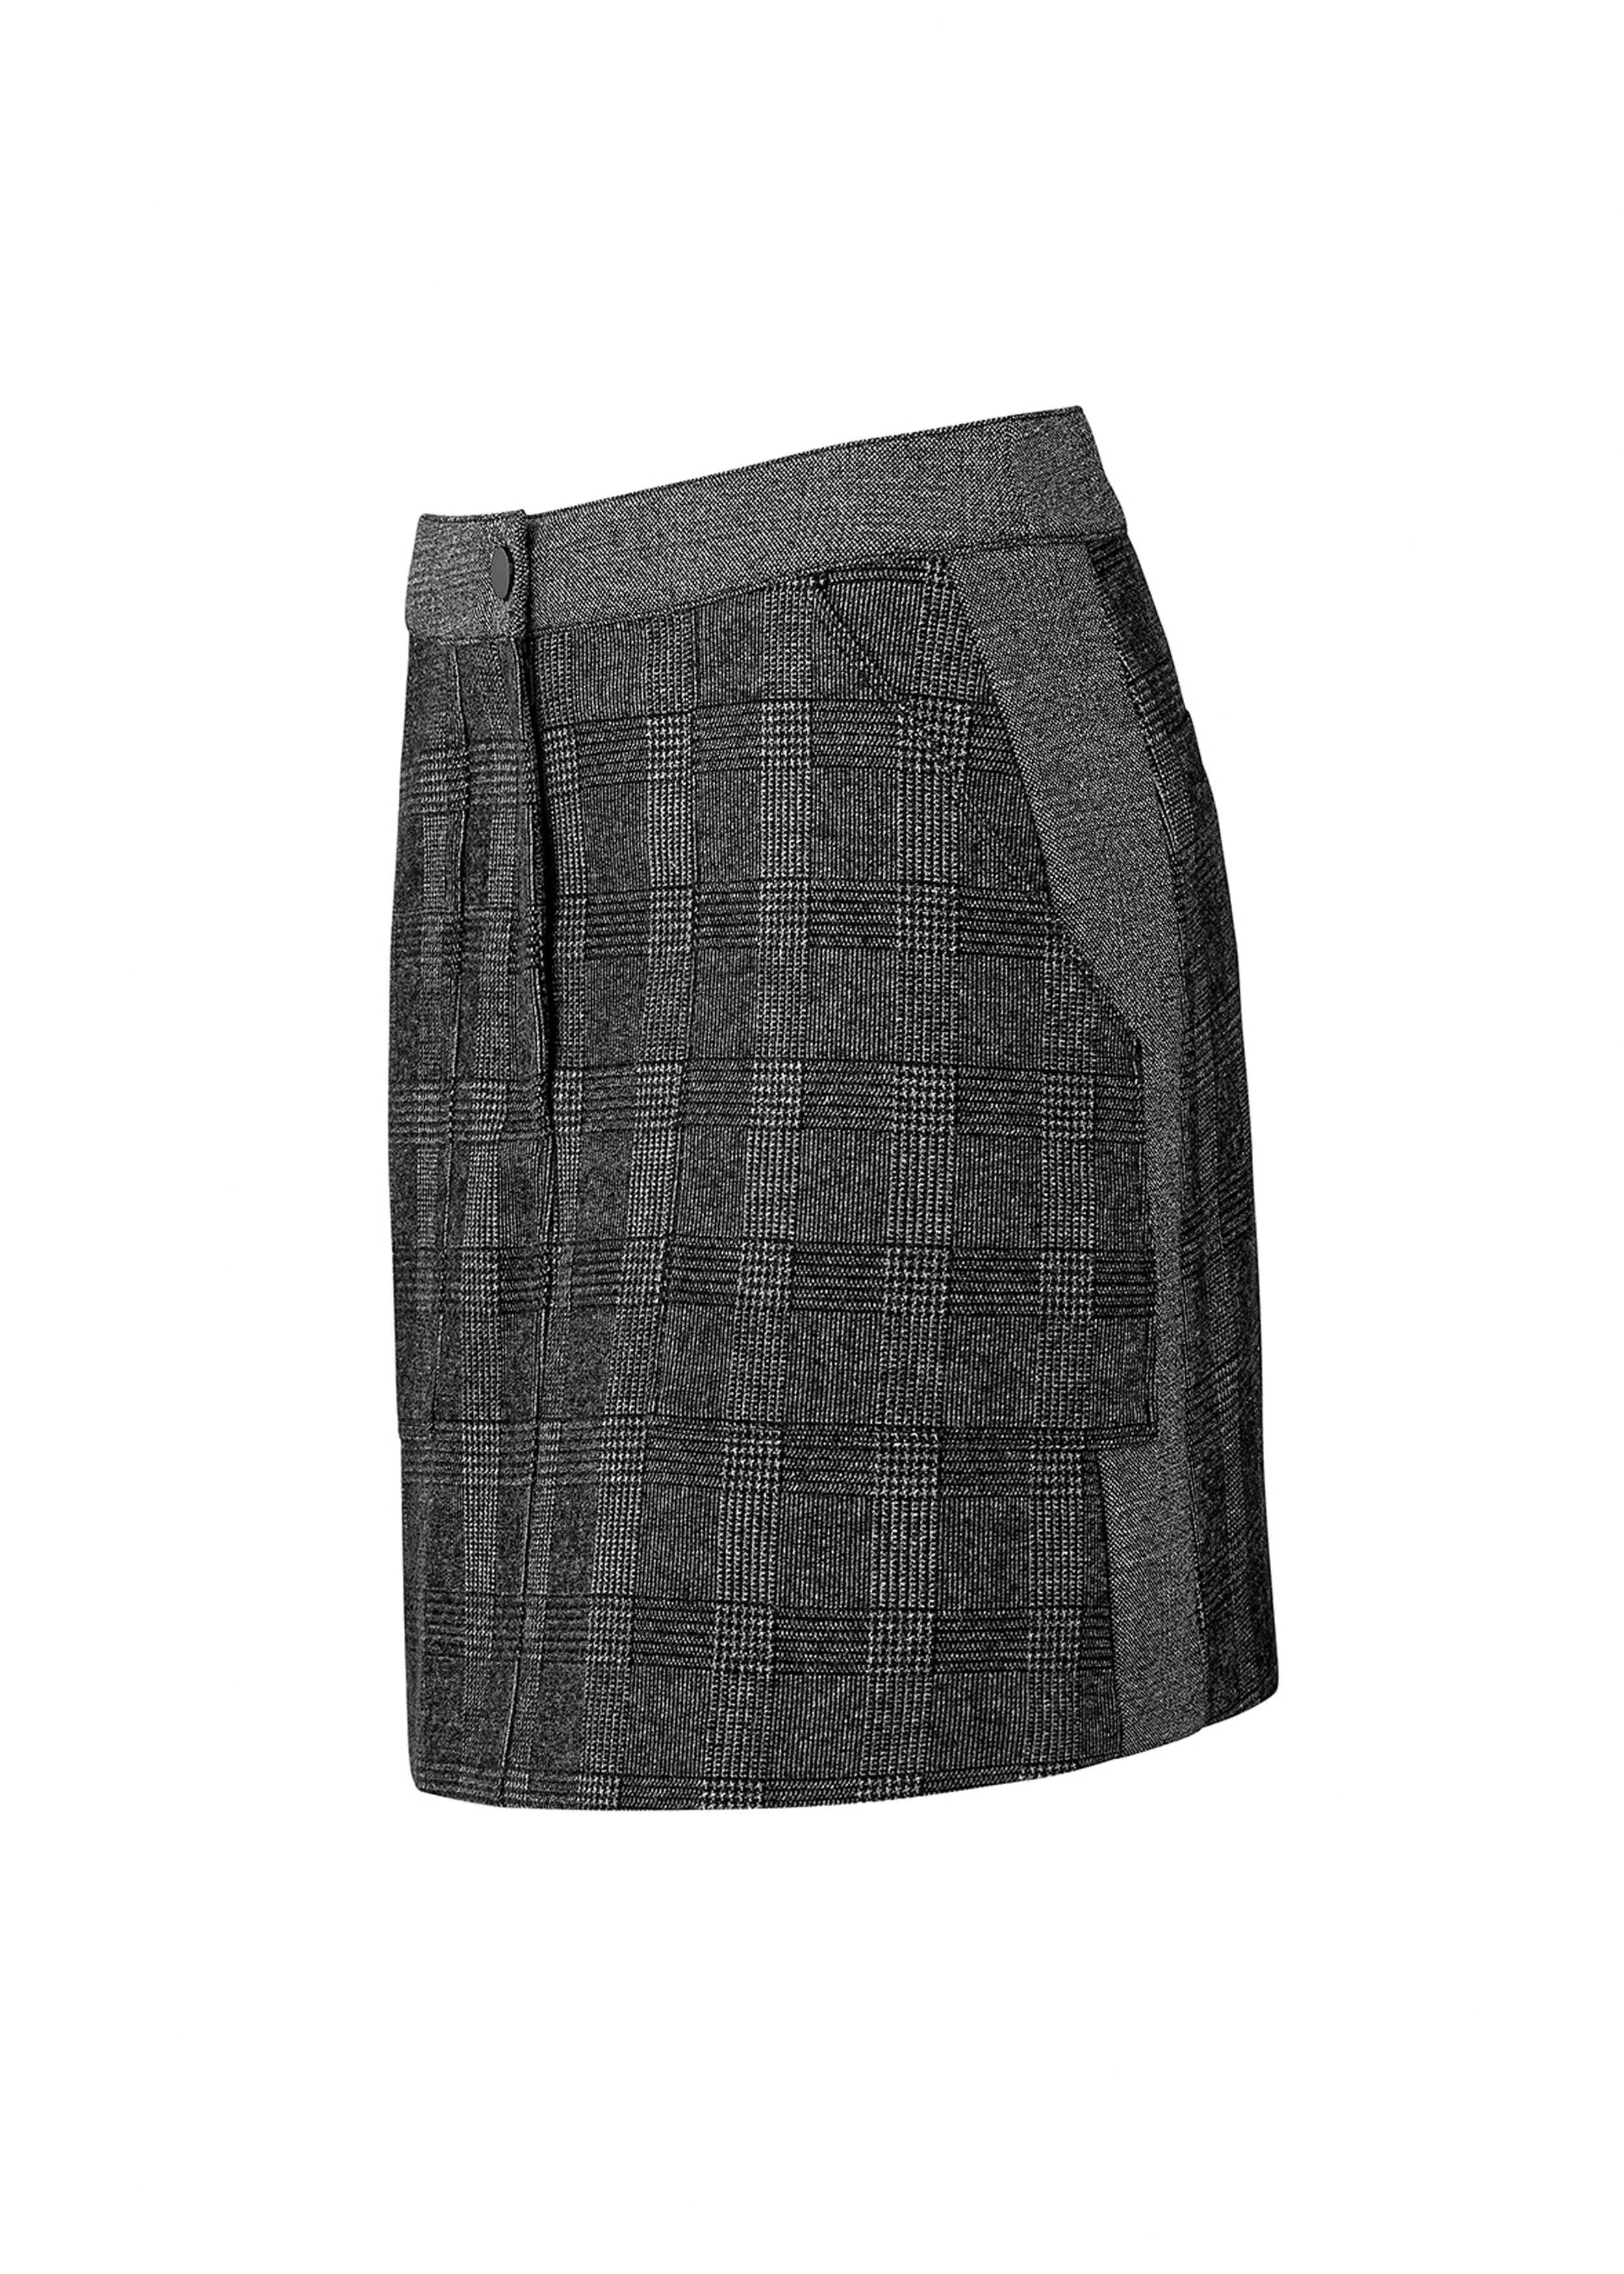 Check Mini Skirt Charcoal